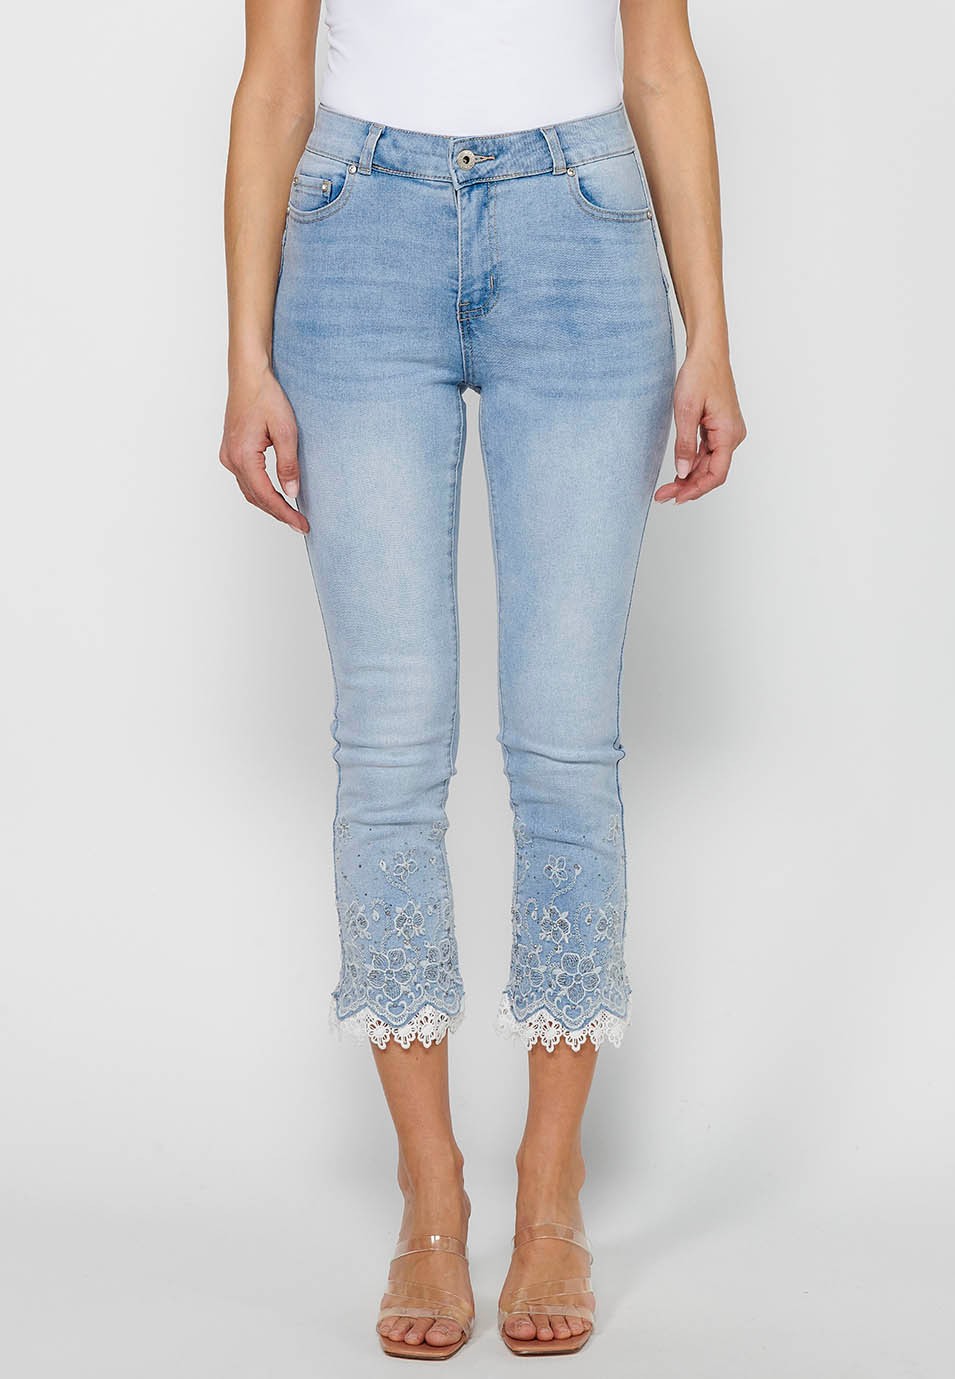 Pantalón largo jeans slim con Cierre delantero con cremallera y Detalles bordados florales de Color Azul claro para Mujer 1